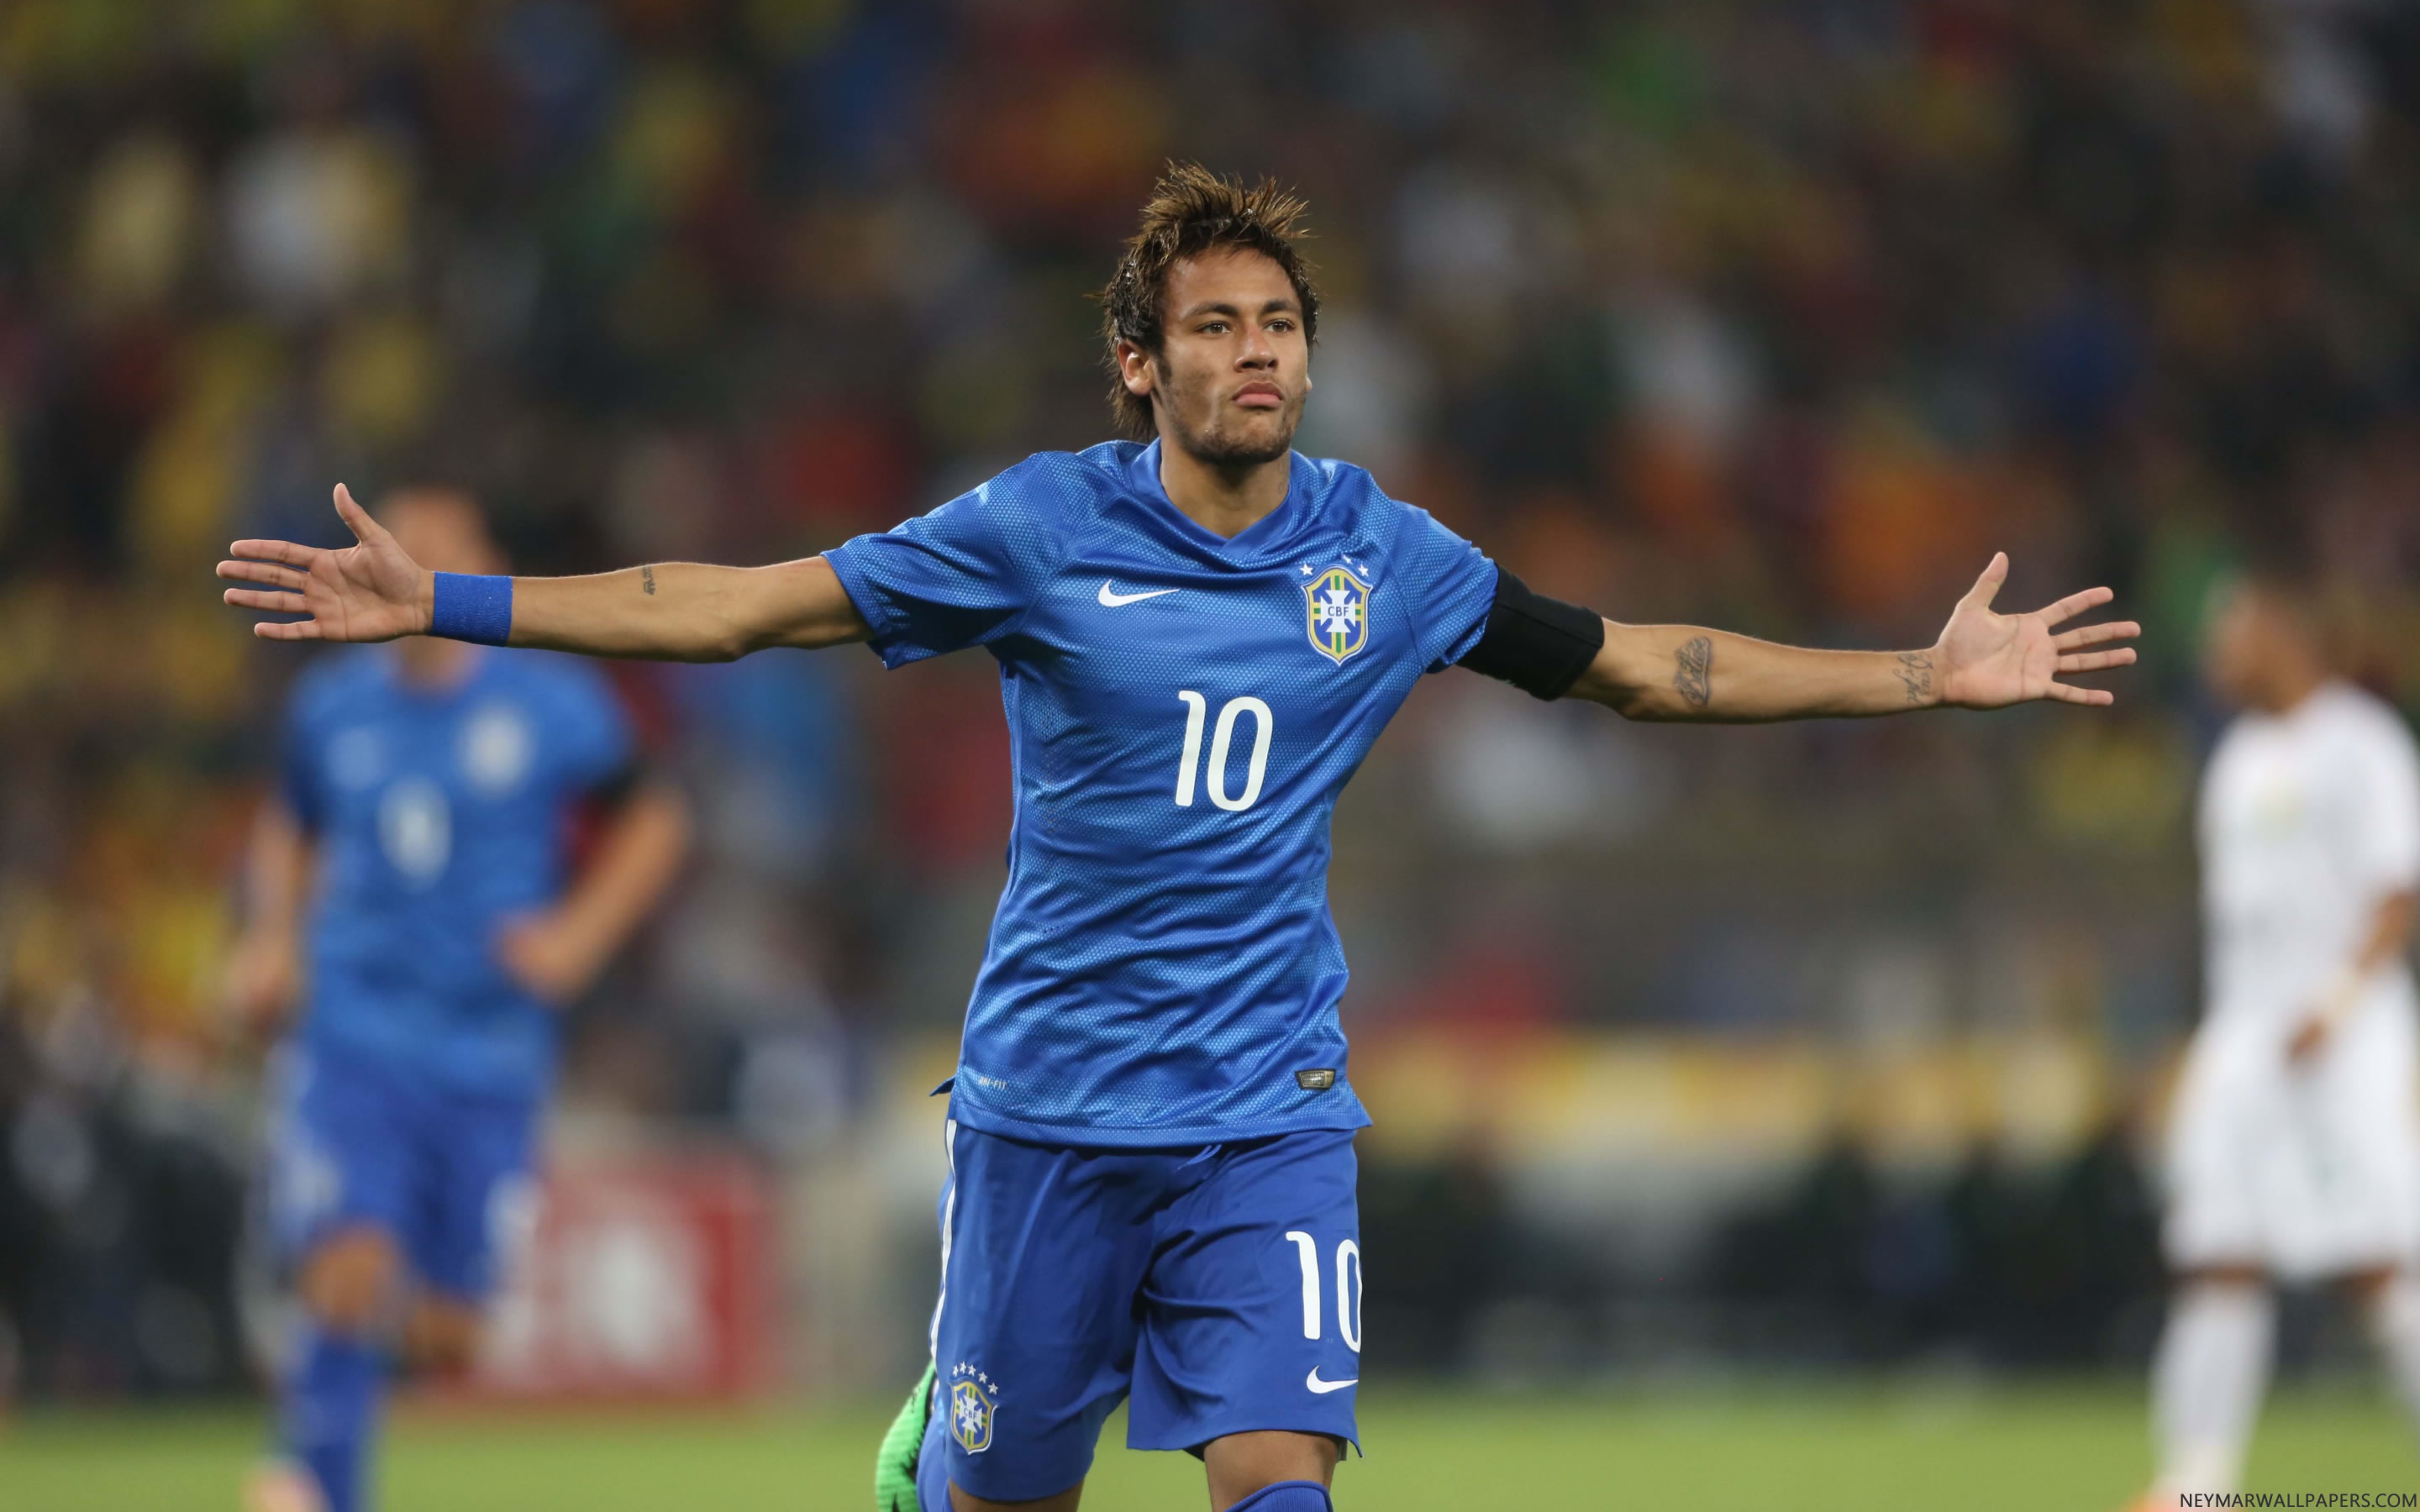 Neymar Brazil blue jersey celebrating